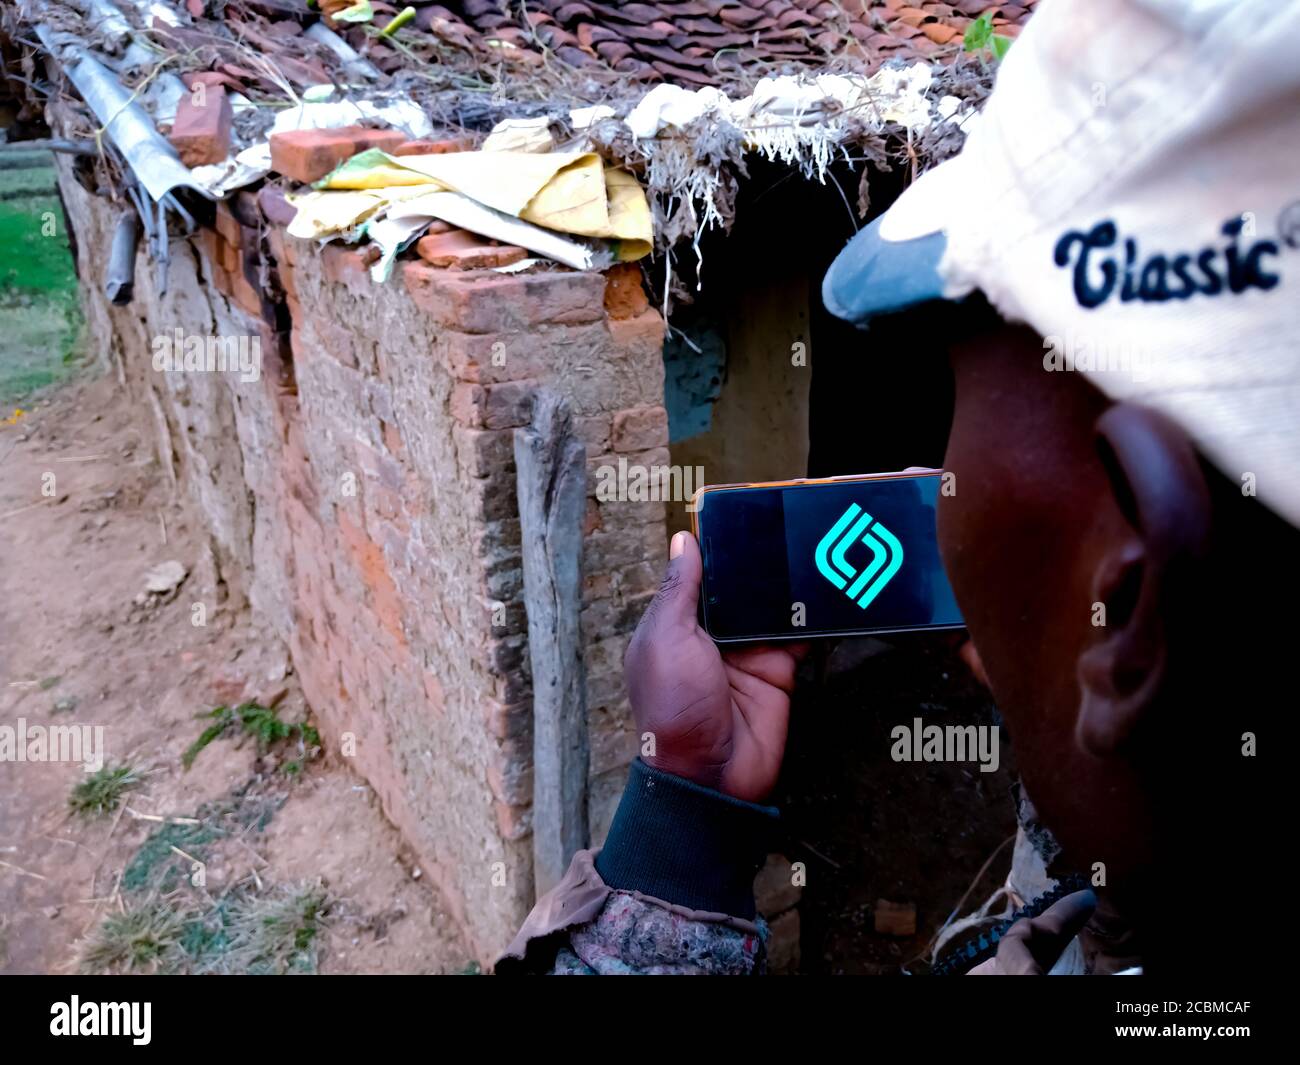 DISTRETTO KATNI, INDIA - 20 DICEMBRE 2019: CashBean prestito accessibile il logo istantaneo presentato sullo schermo digitale del telefono intelligente dalla mano della gente del villaggio indiano Foto Stock